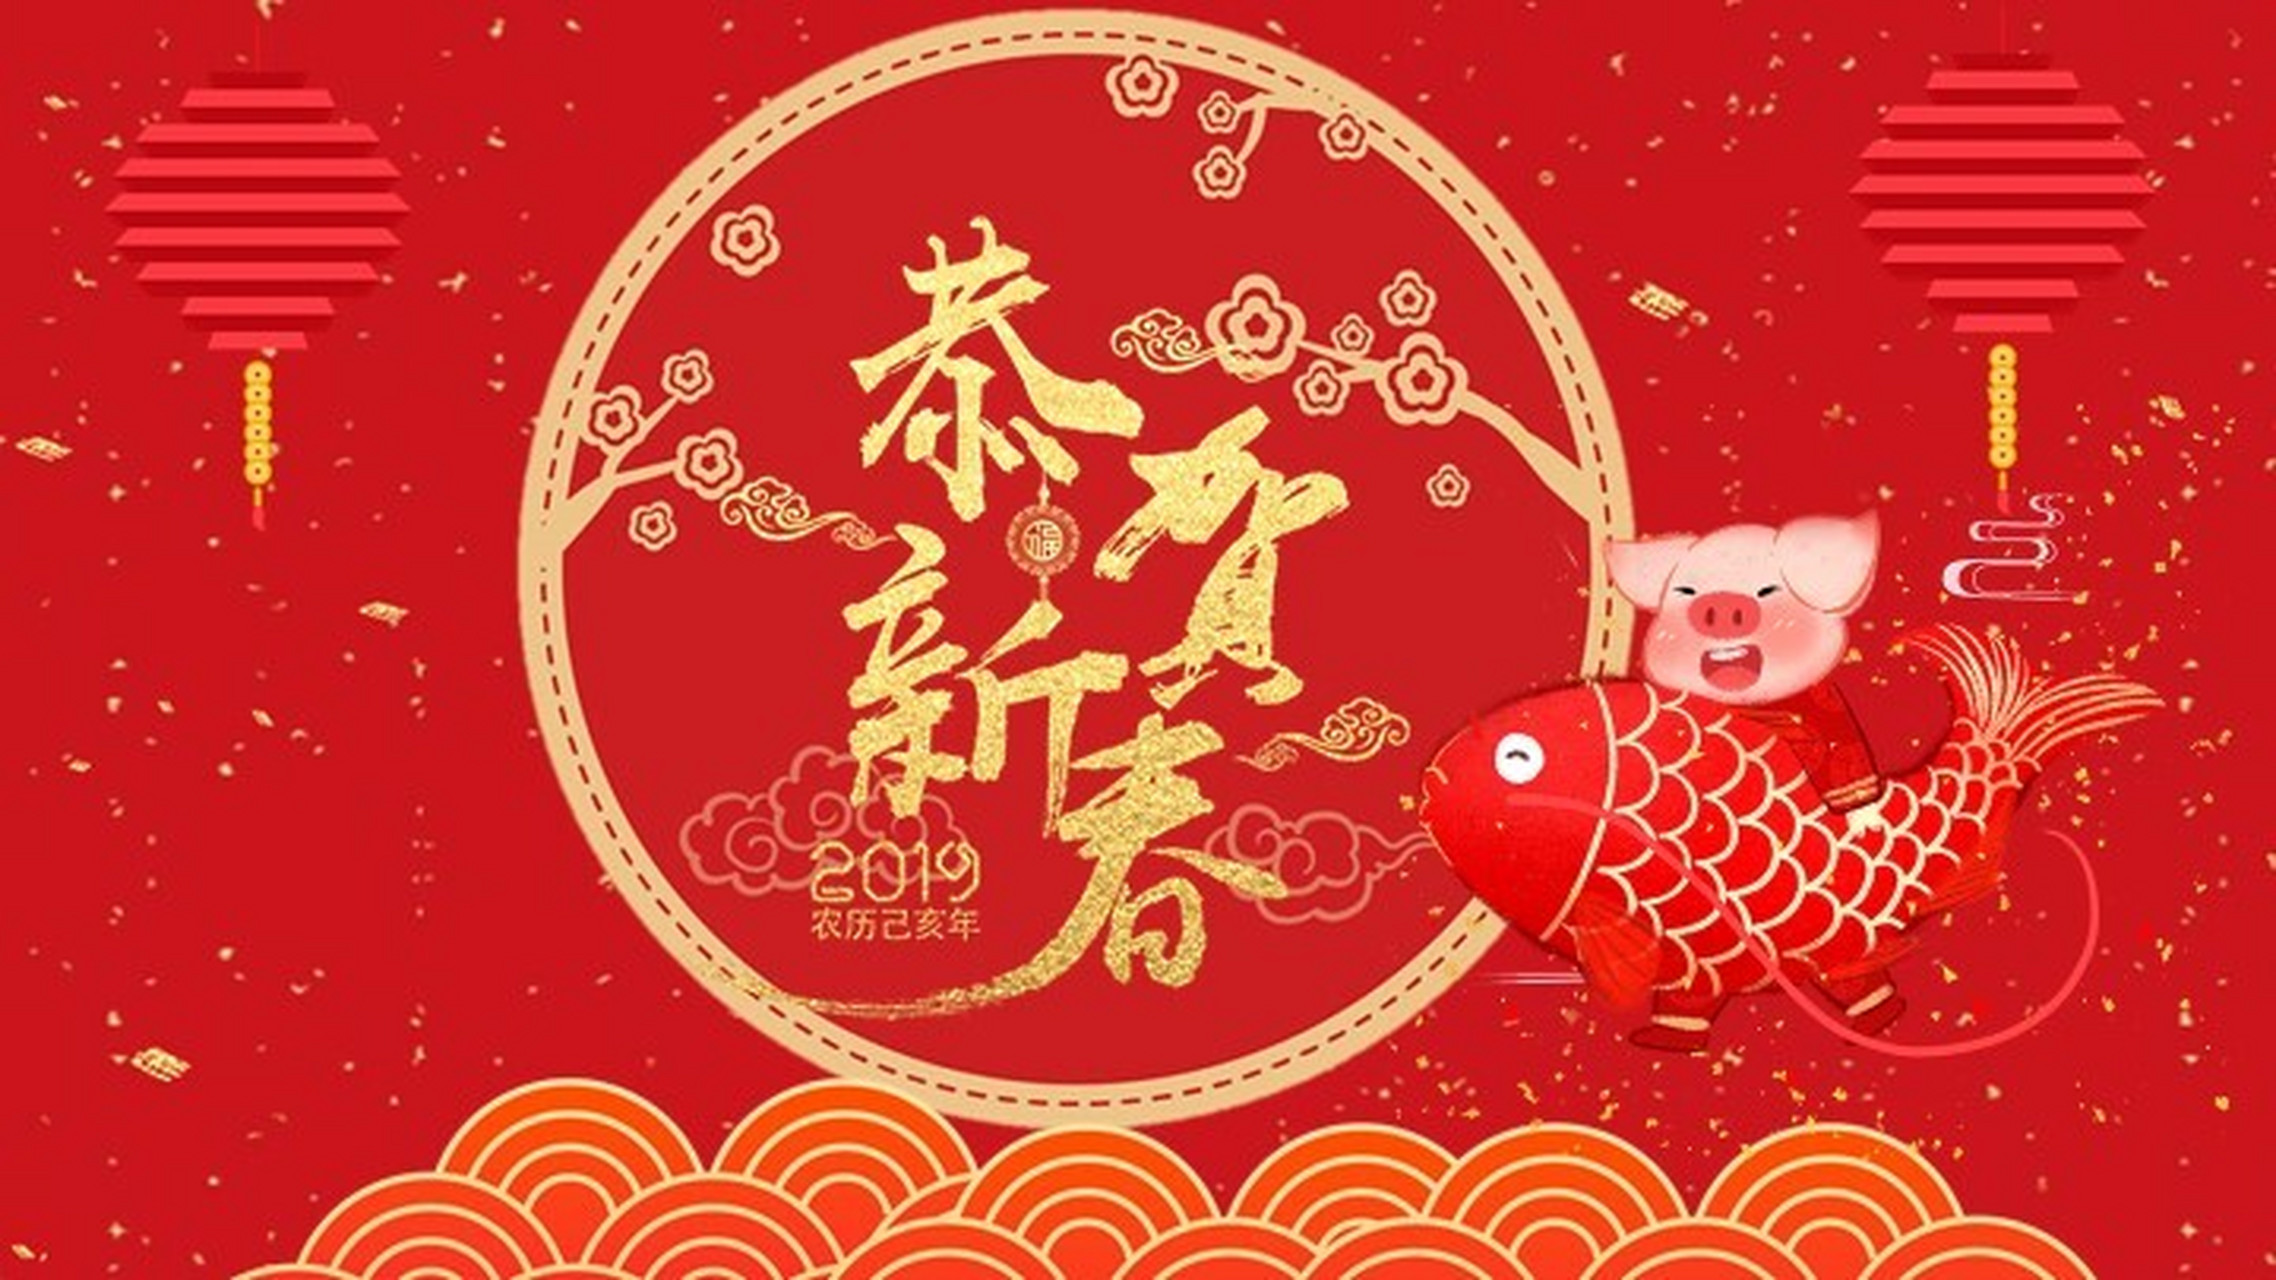 猪猪春节新年祝福贺卡ppt模板 本作品内容为 猪猪春节新年祝福贺卡ppt